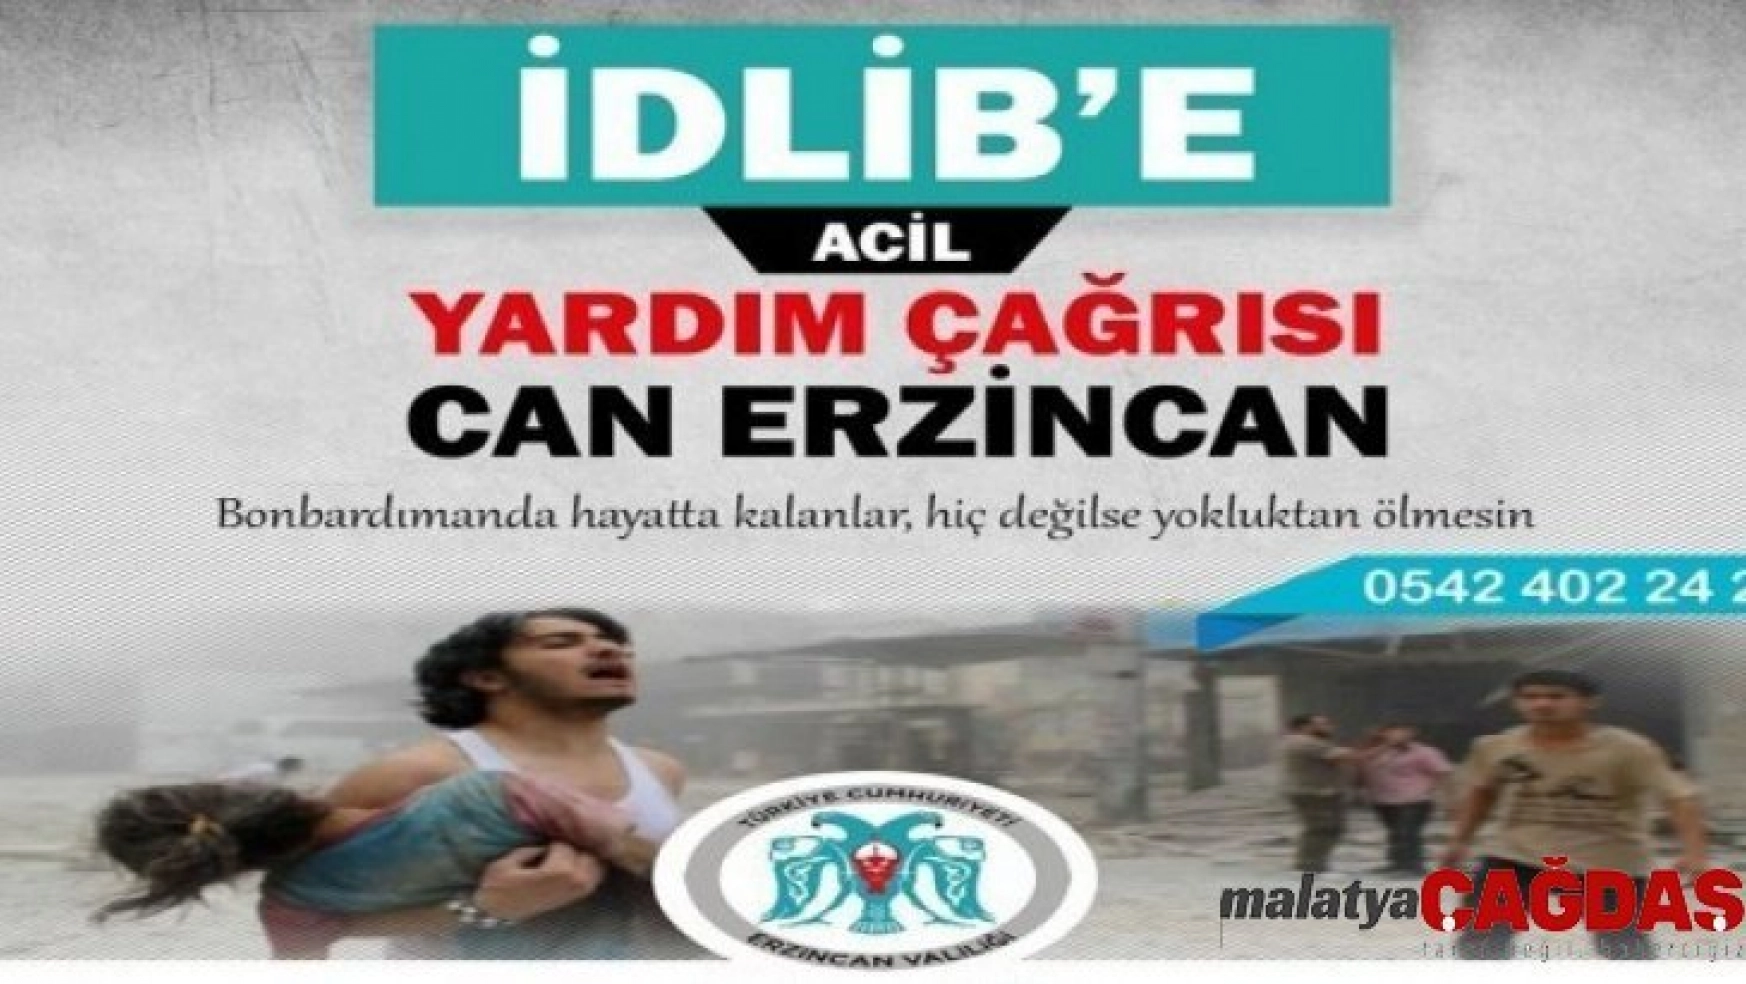 Erzincan'da İdlib için yardım seferberliği başlatıldı